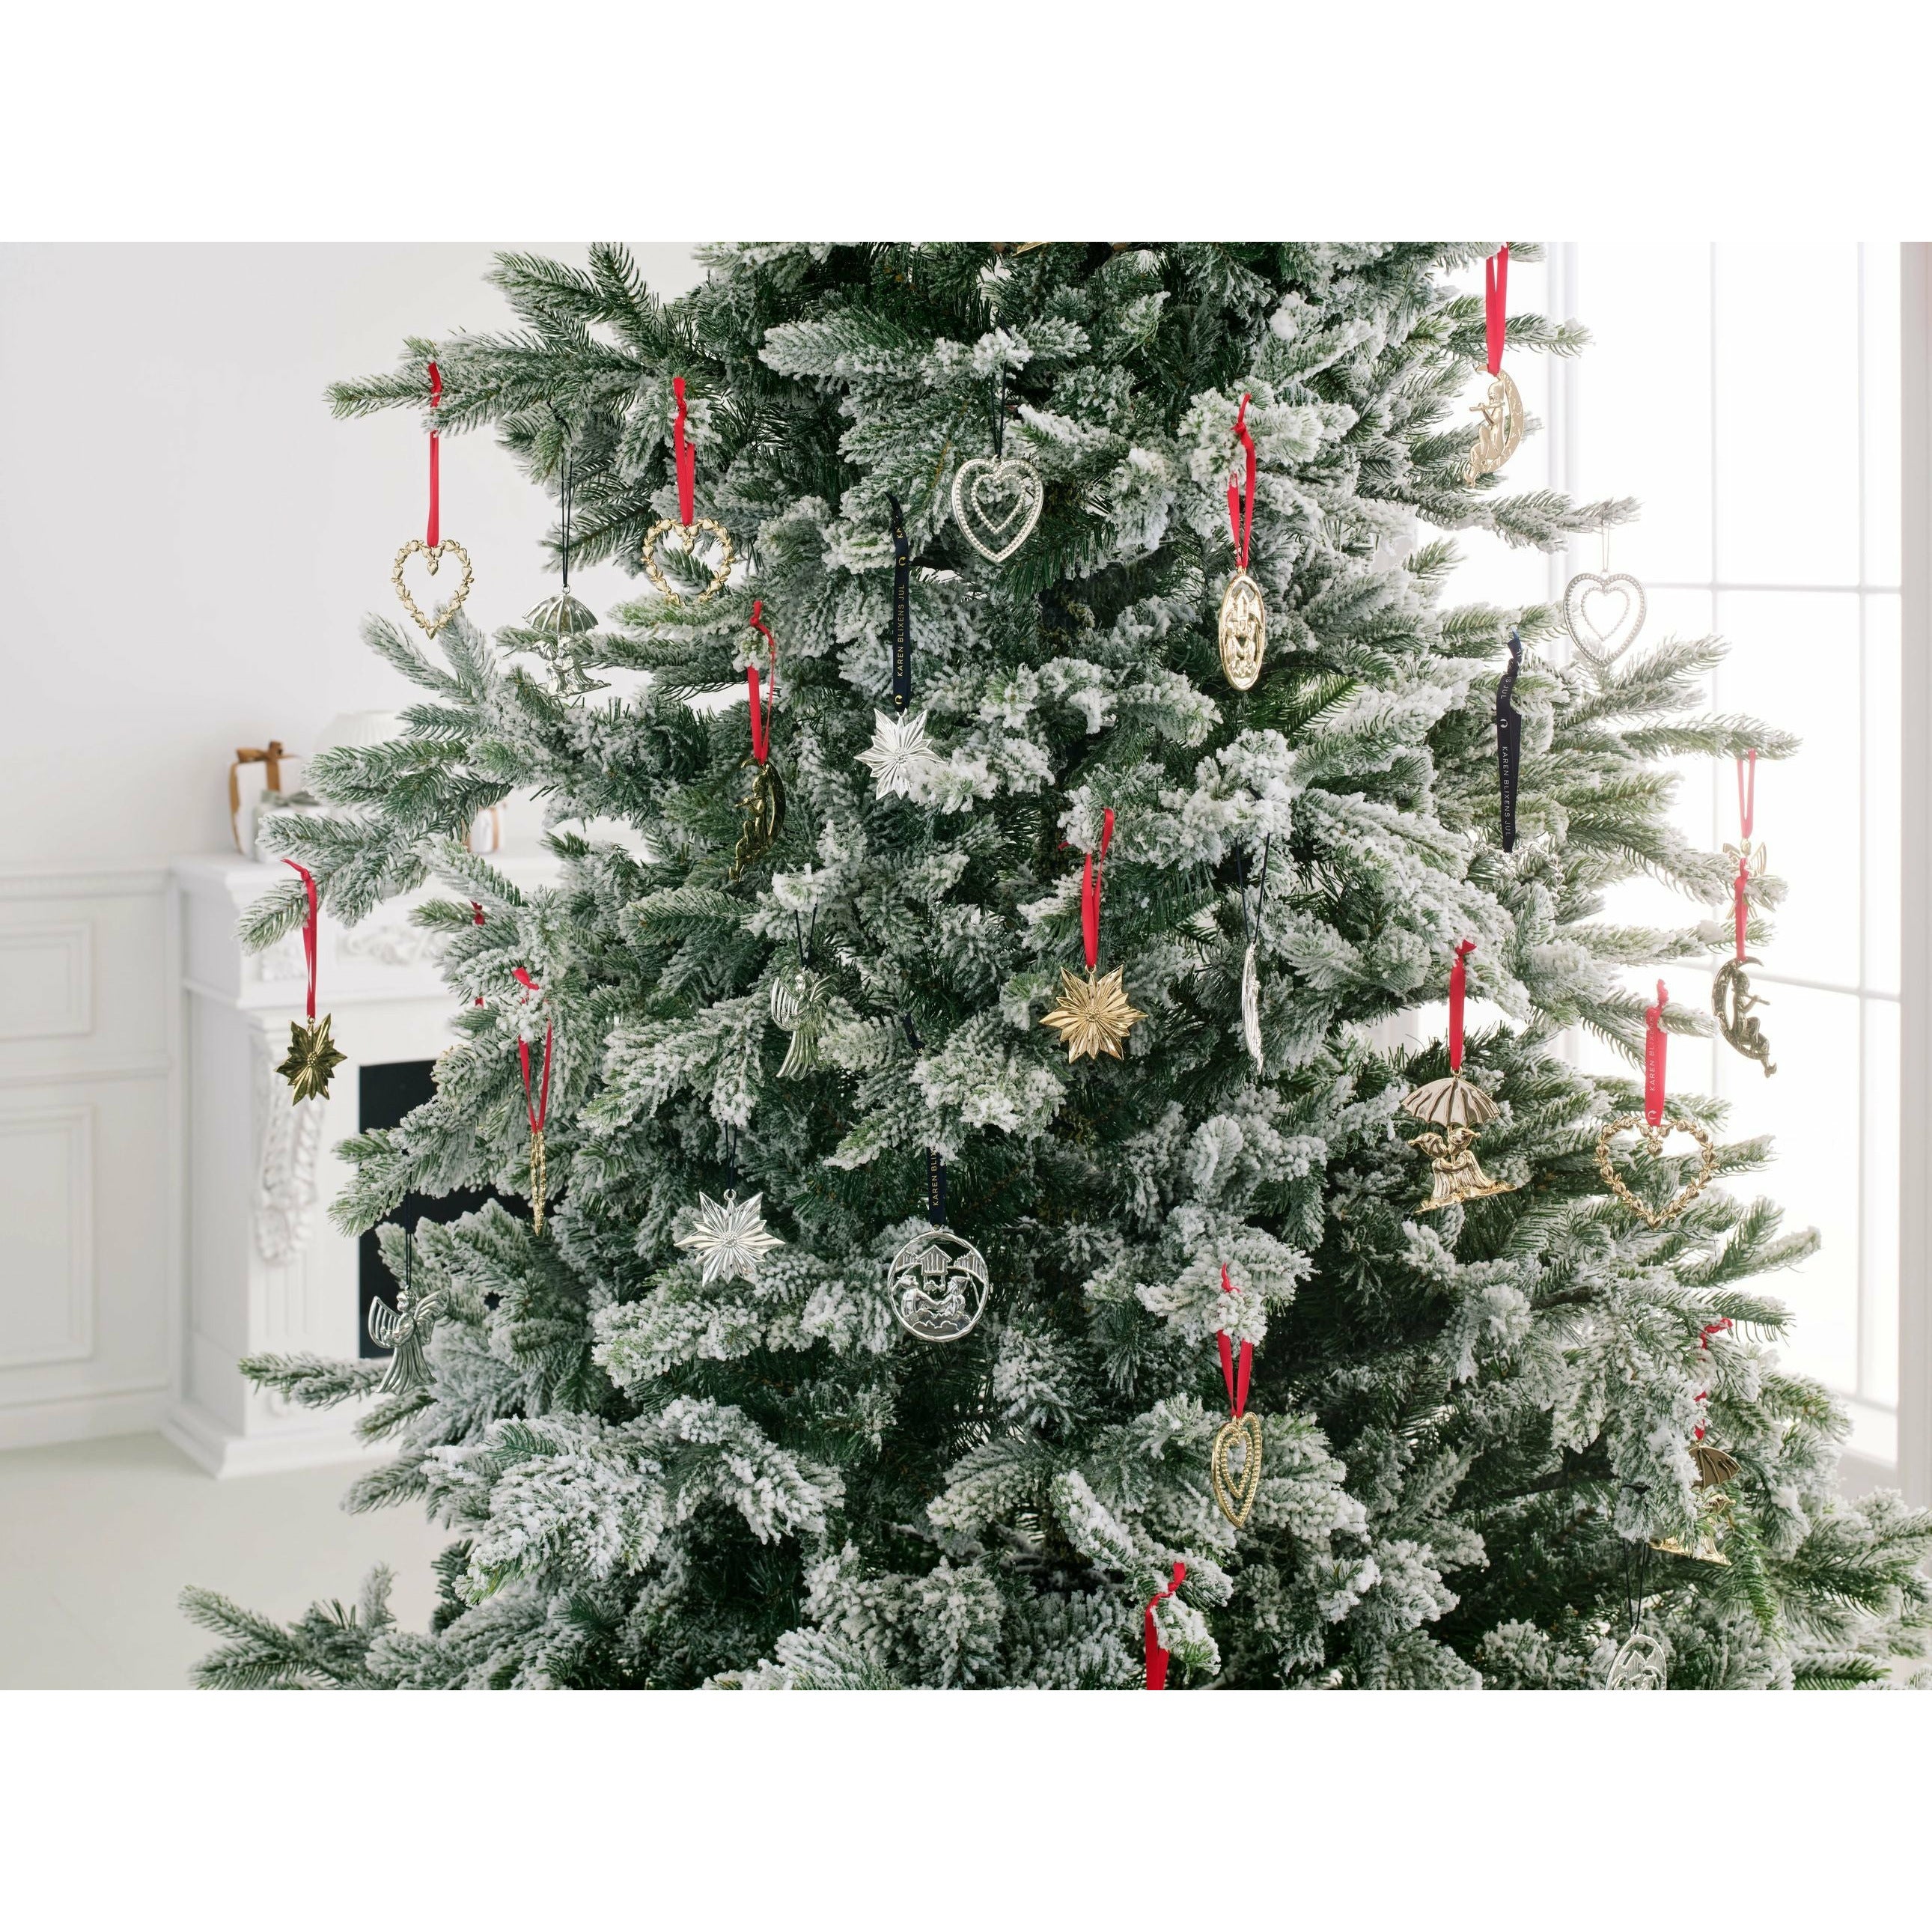 Rosendahl Karen Blixen Nordstern Christmas Decorations H 7cm, sølvbelagt